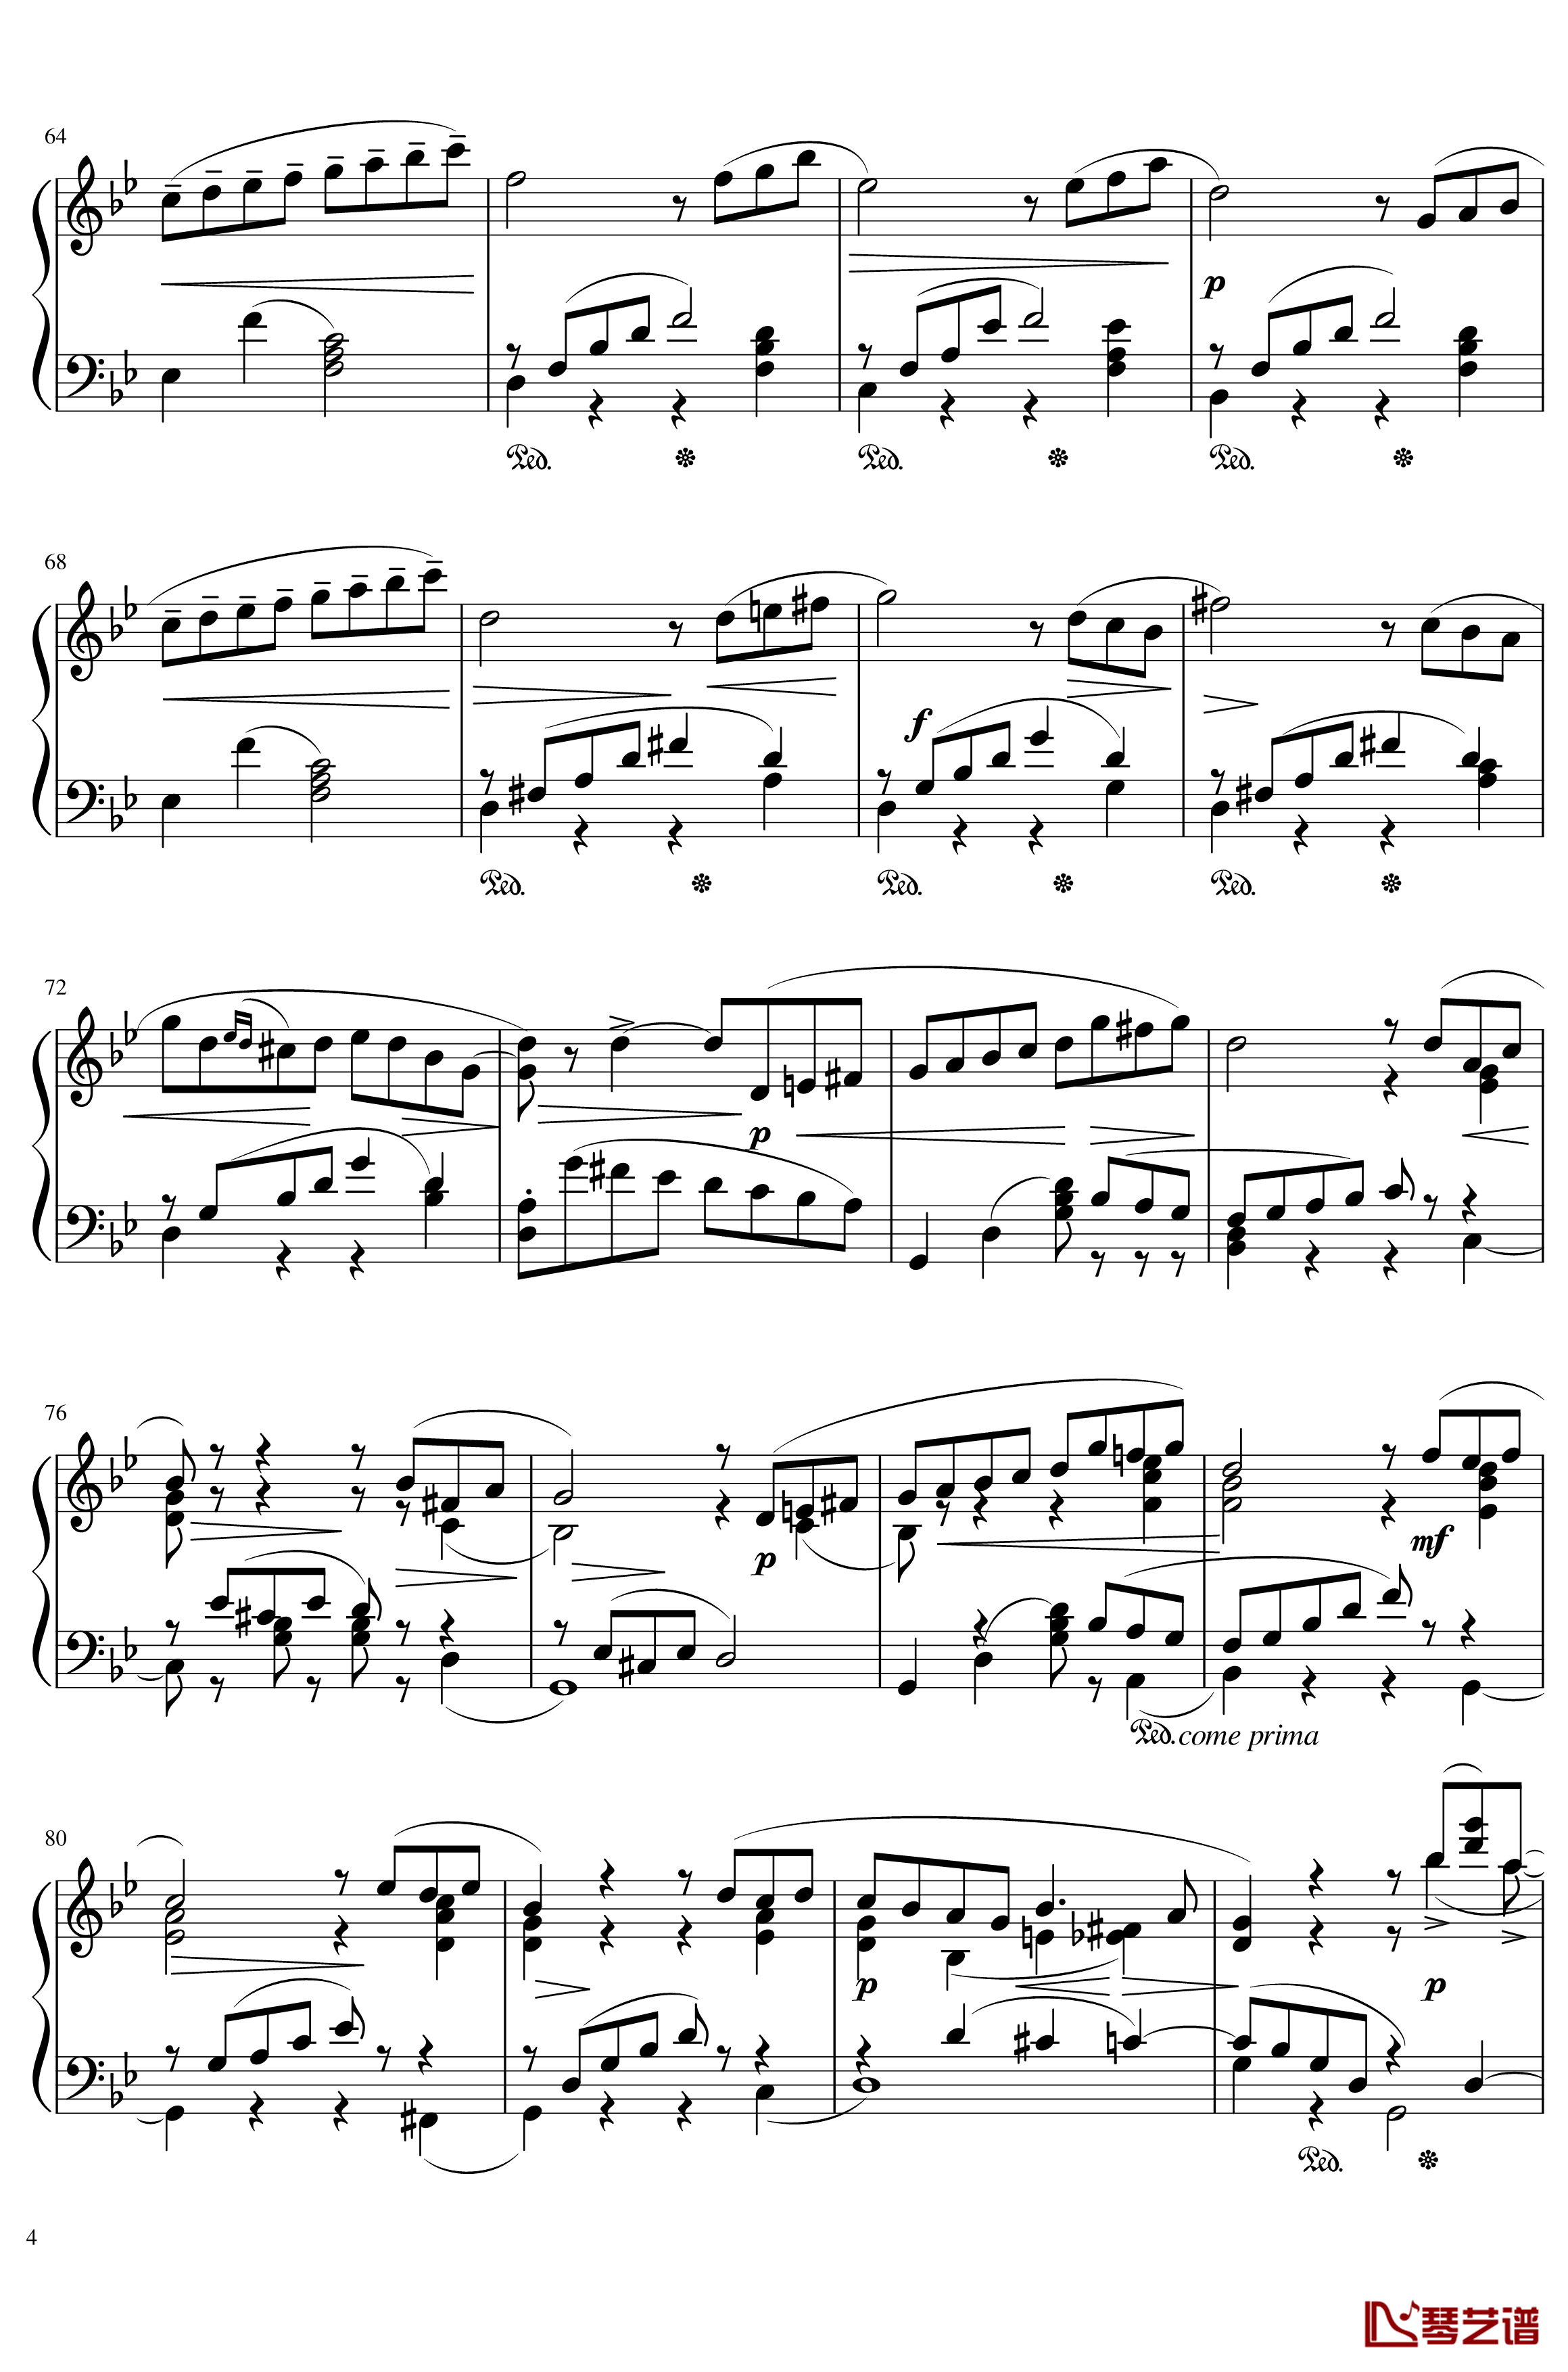 六月钢琴谱 船歌-The seasons,June: Barcarolle-柴科夫斯基-Peter Ilyich Tchaikovsky4